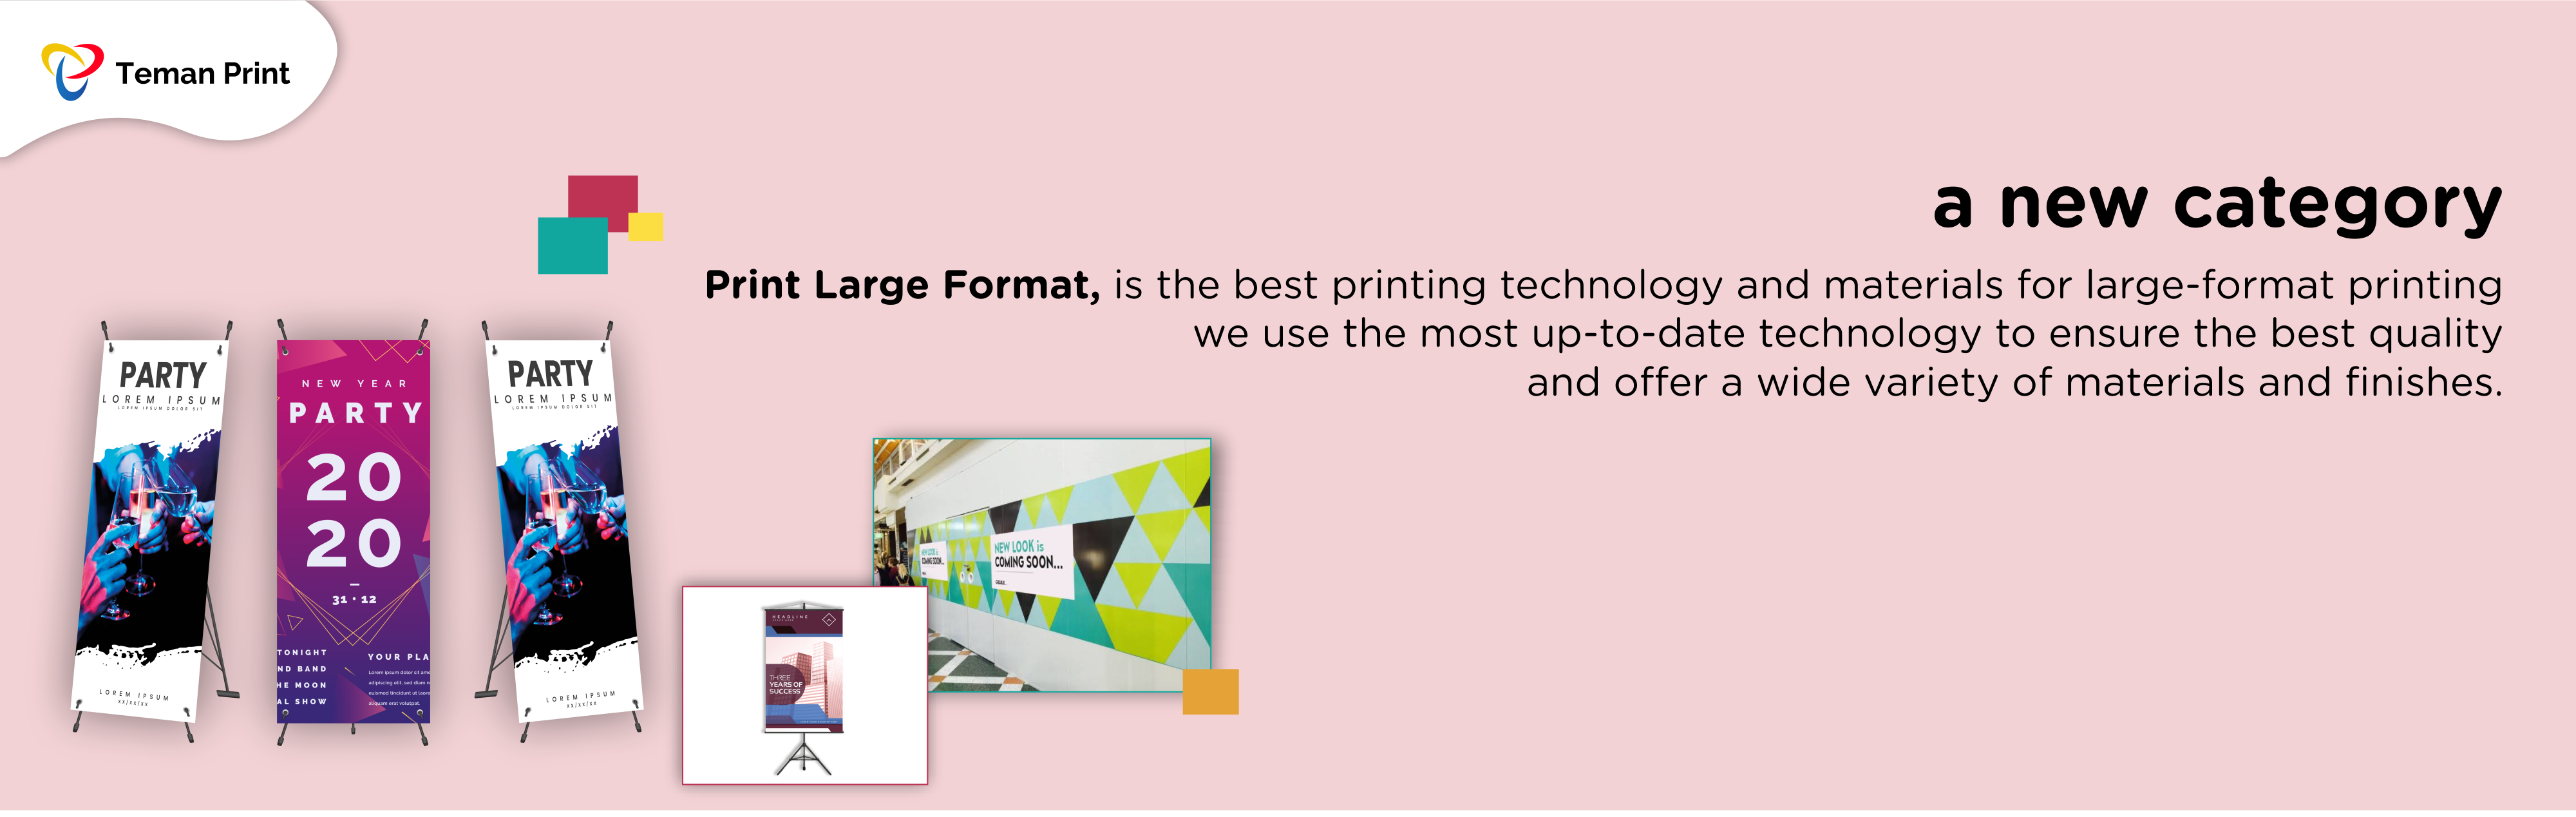 Apa Itu Print Large Format?